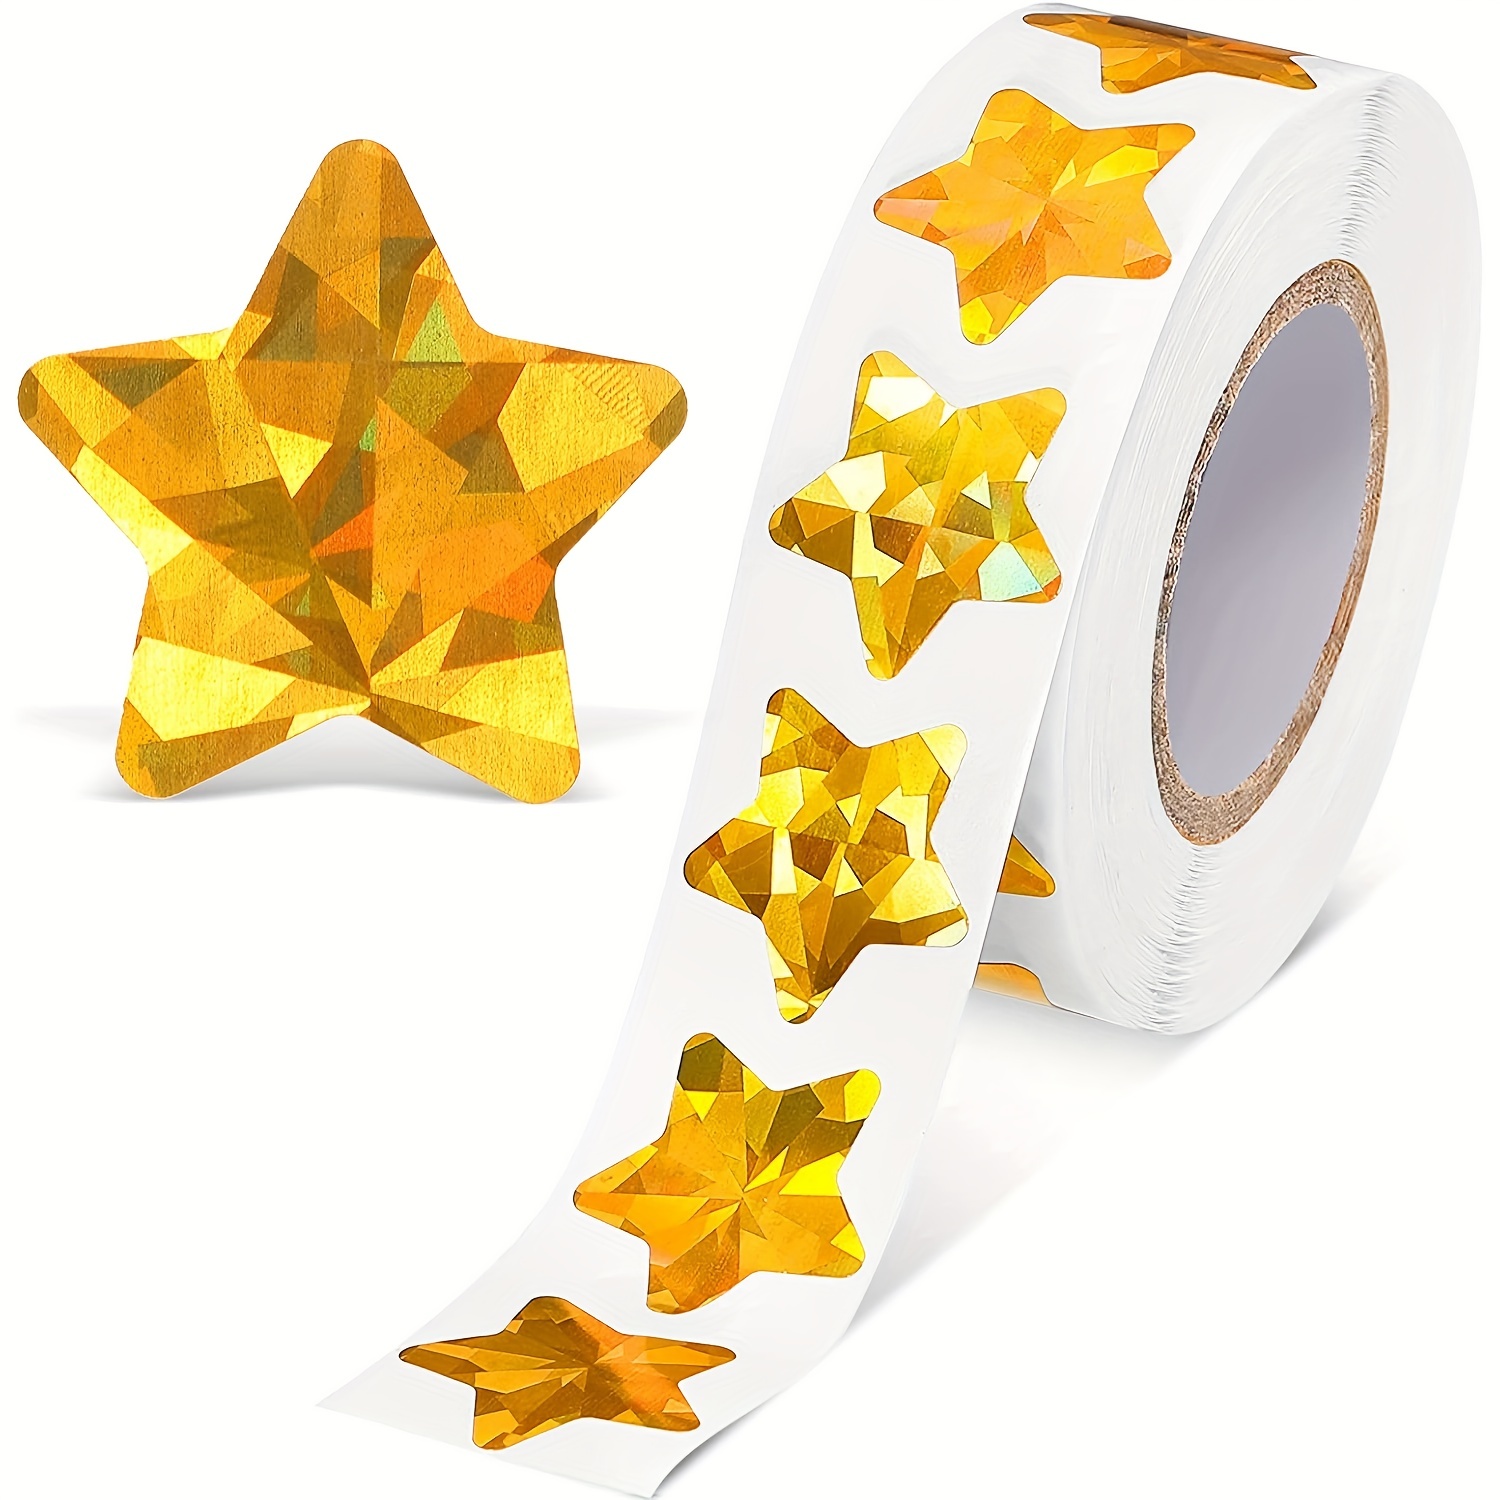 Golden Star Stickers Holographic Stickers Reward - Temu